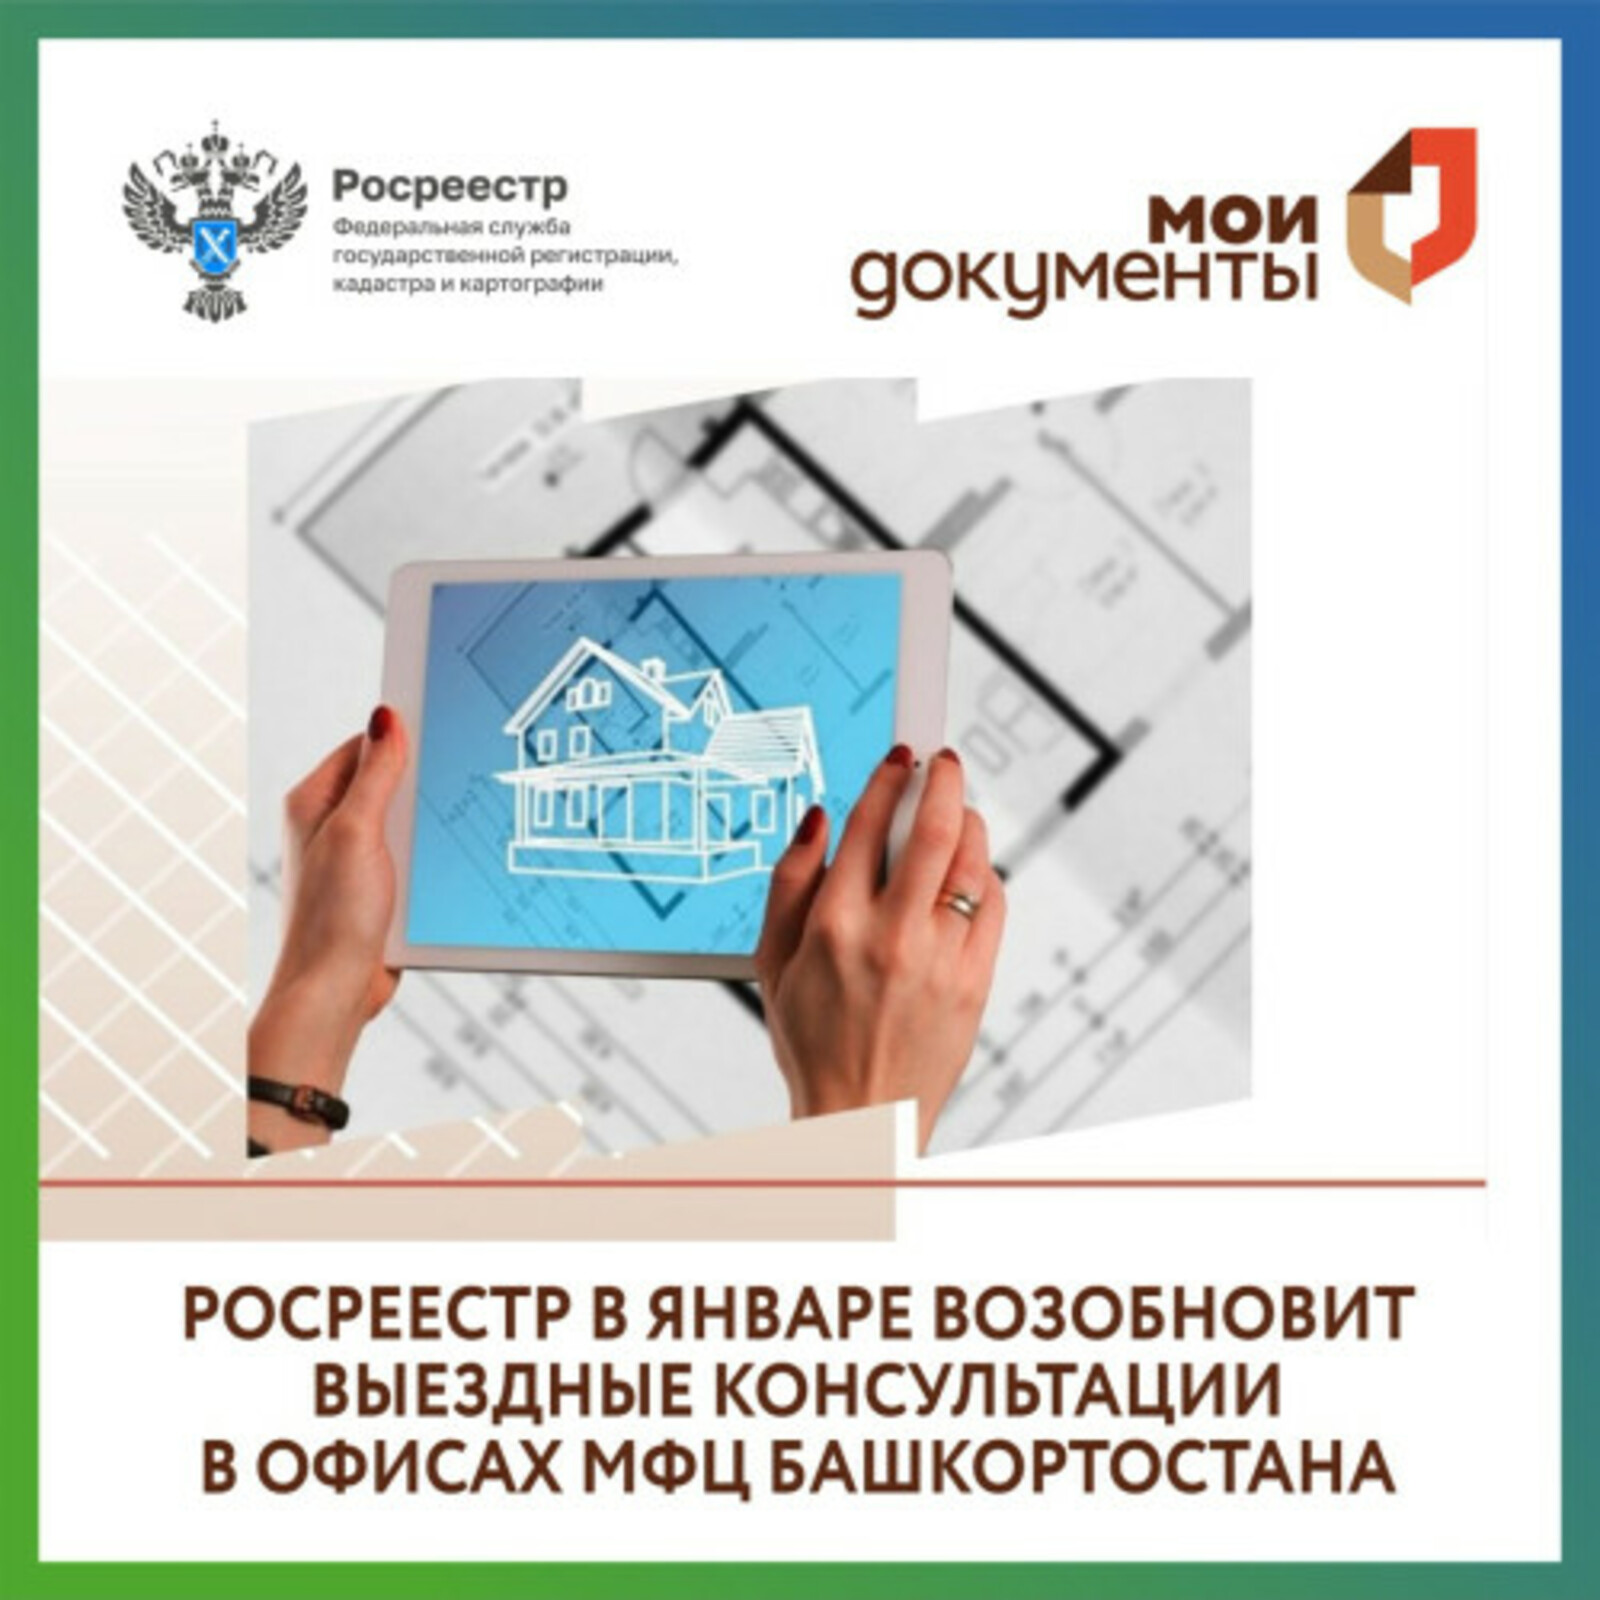 Росреестр в январе возобновит выездные консультации в офисах МФЦ Башкортостана